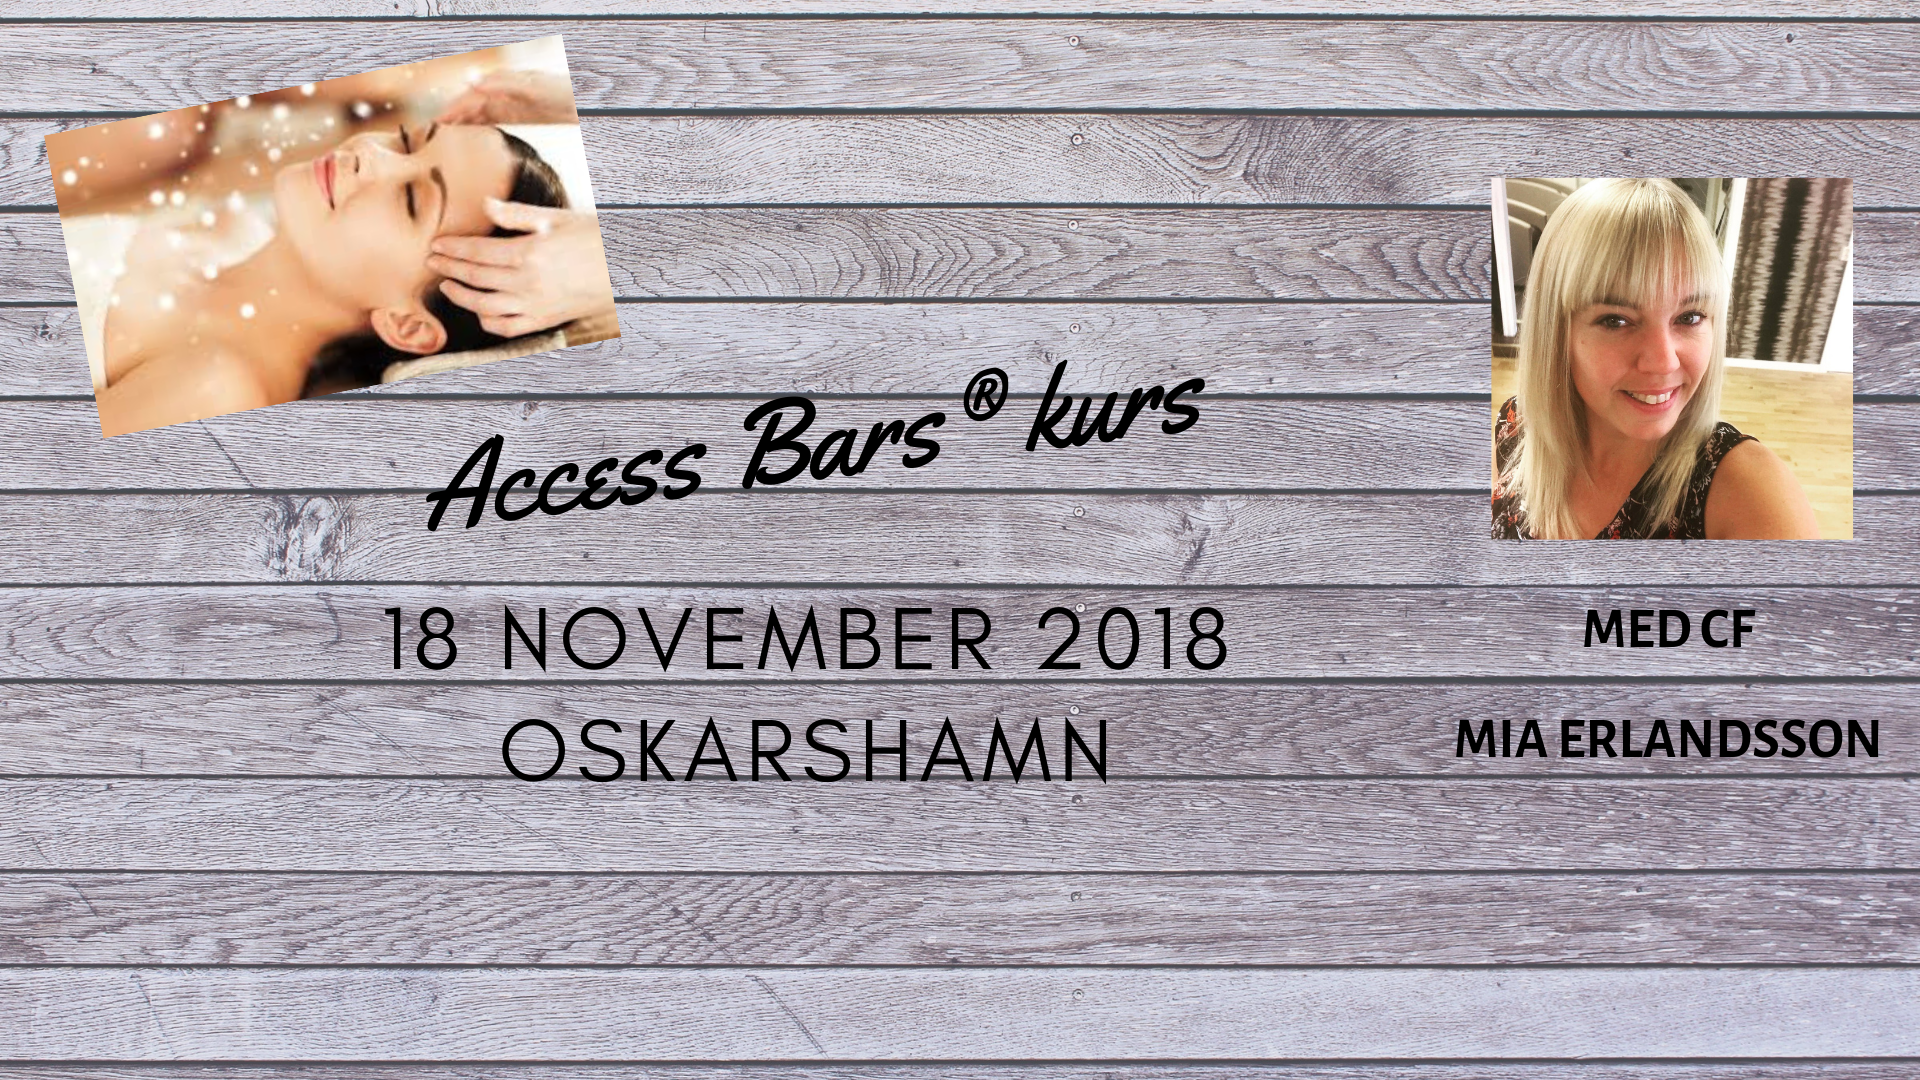 Access Bars® kurs Oskarshamn